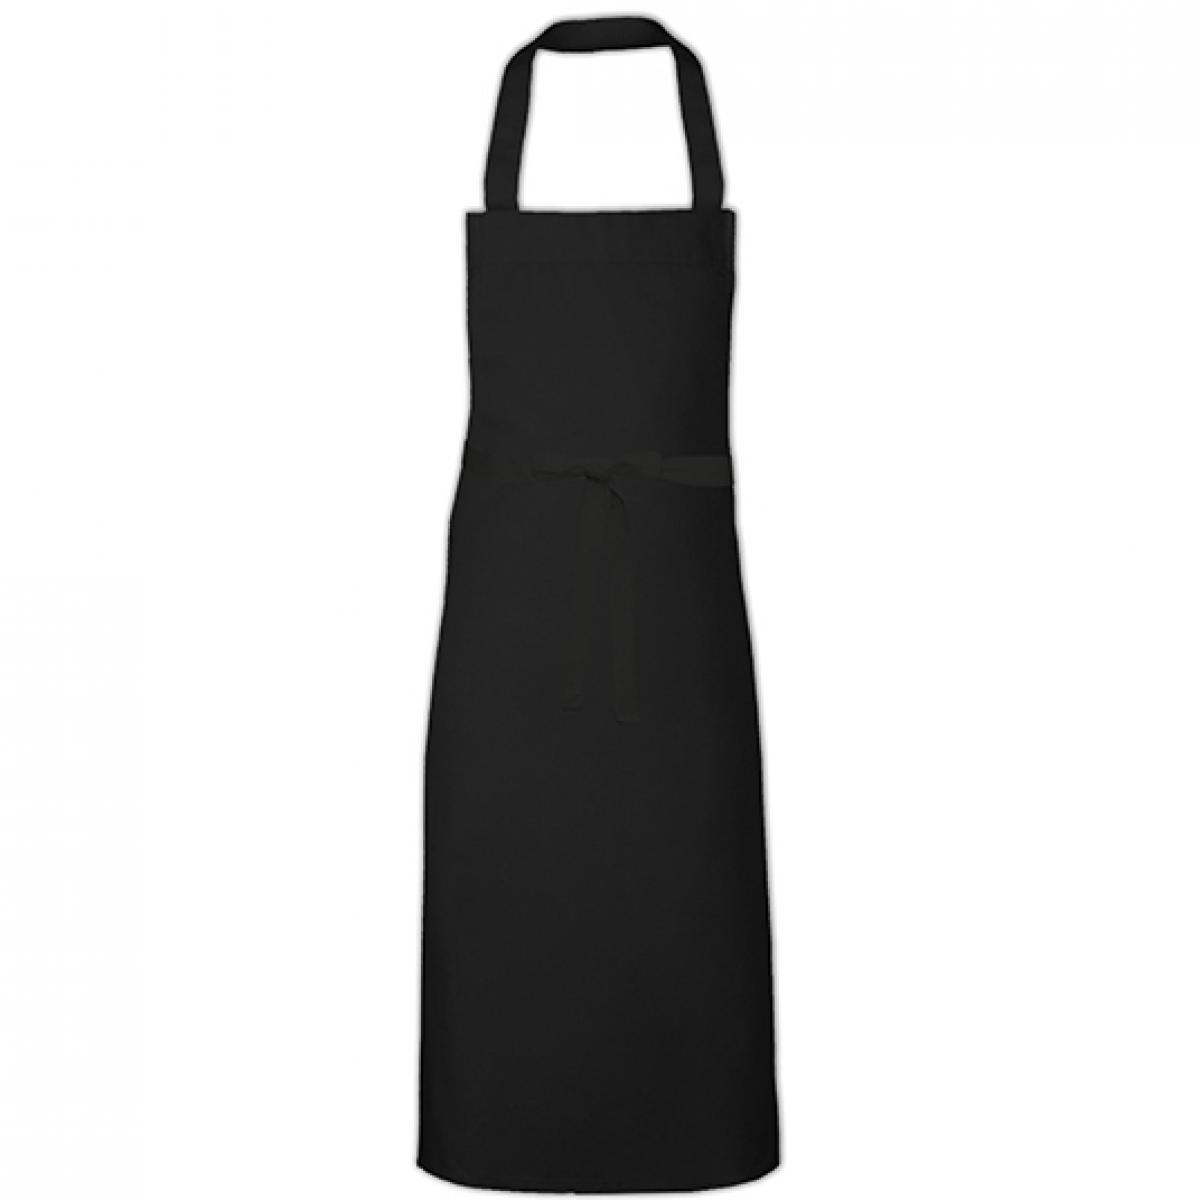 Hersteller: Link Kitchen Wear Herstellernummer: BBQ11073 Artikelbezeichnung: Barbecue Apron XL - 73 x 110 cm - Waschbar bis 60 °C Farbe: Black